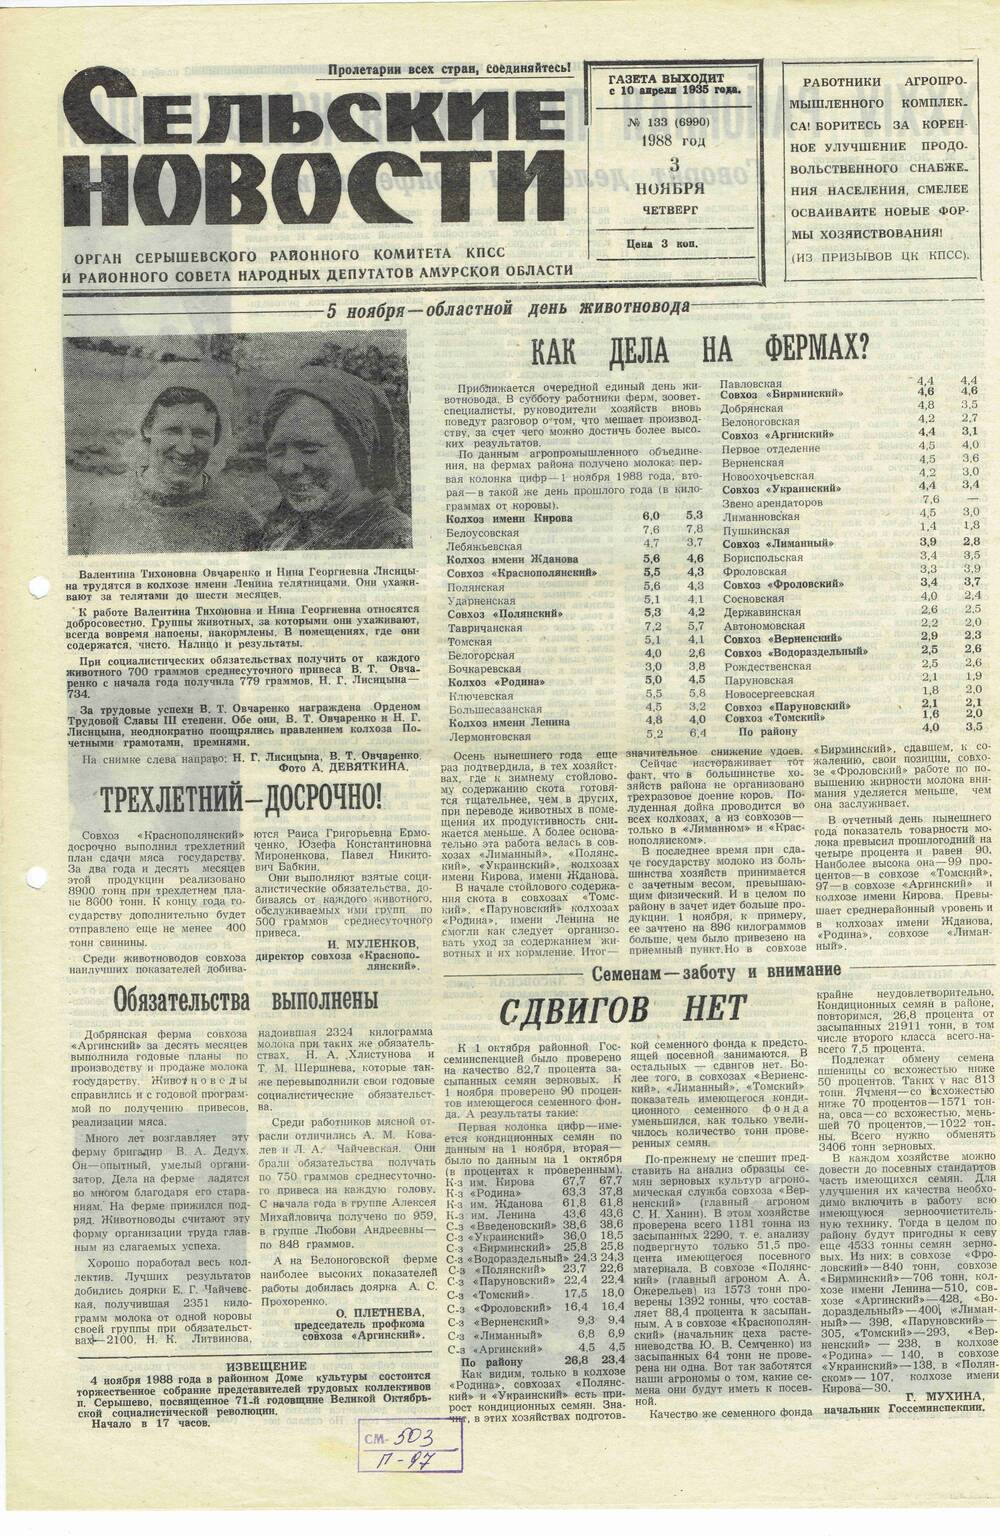 Газета «Сельские новости» №133 03.11.1988 года выпуска.